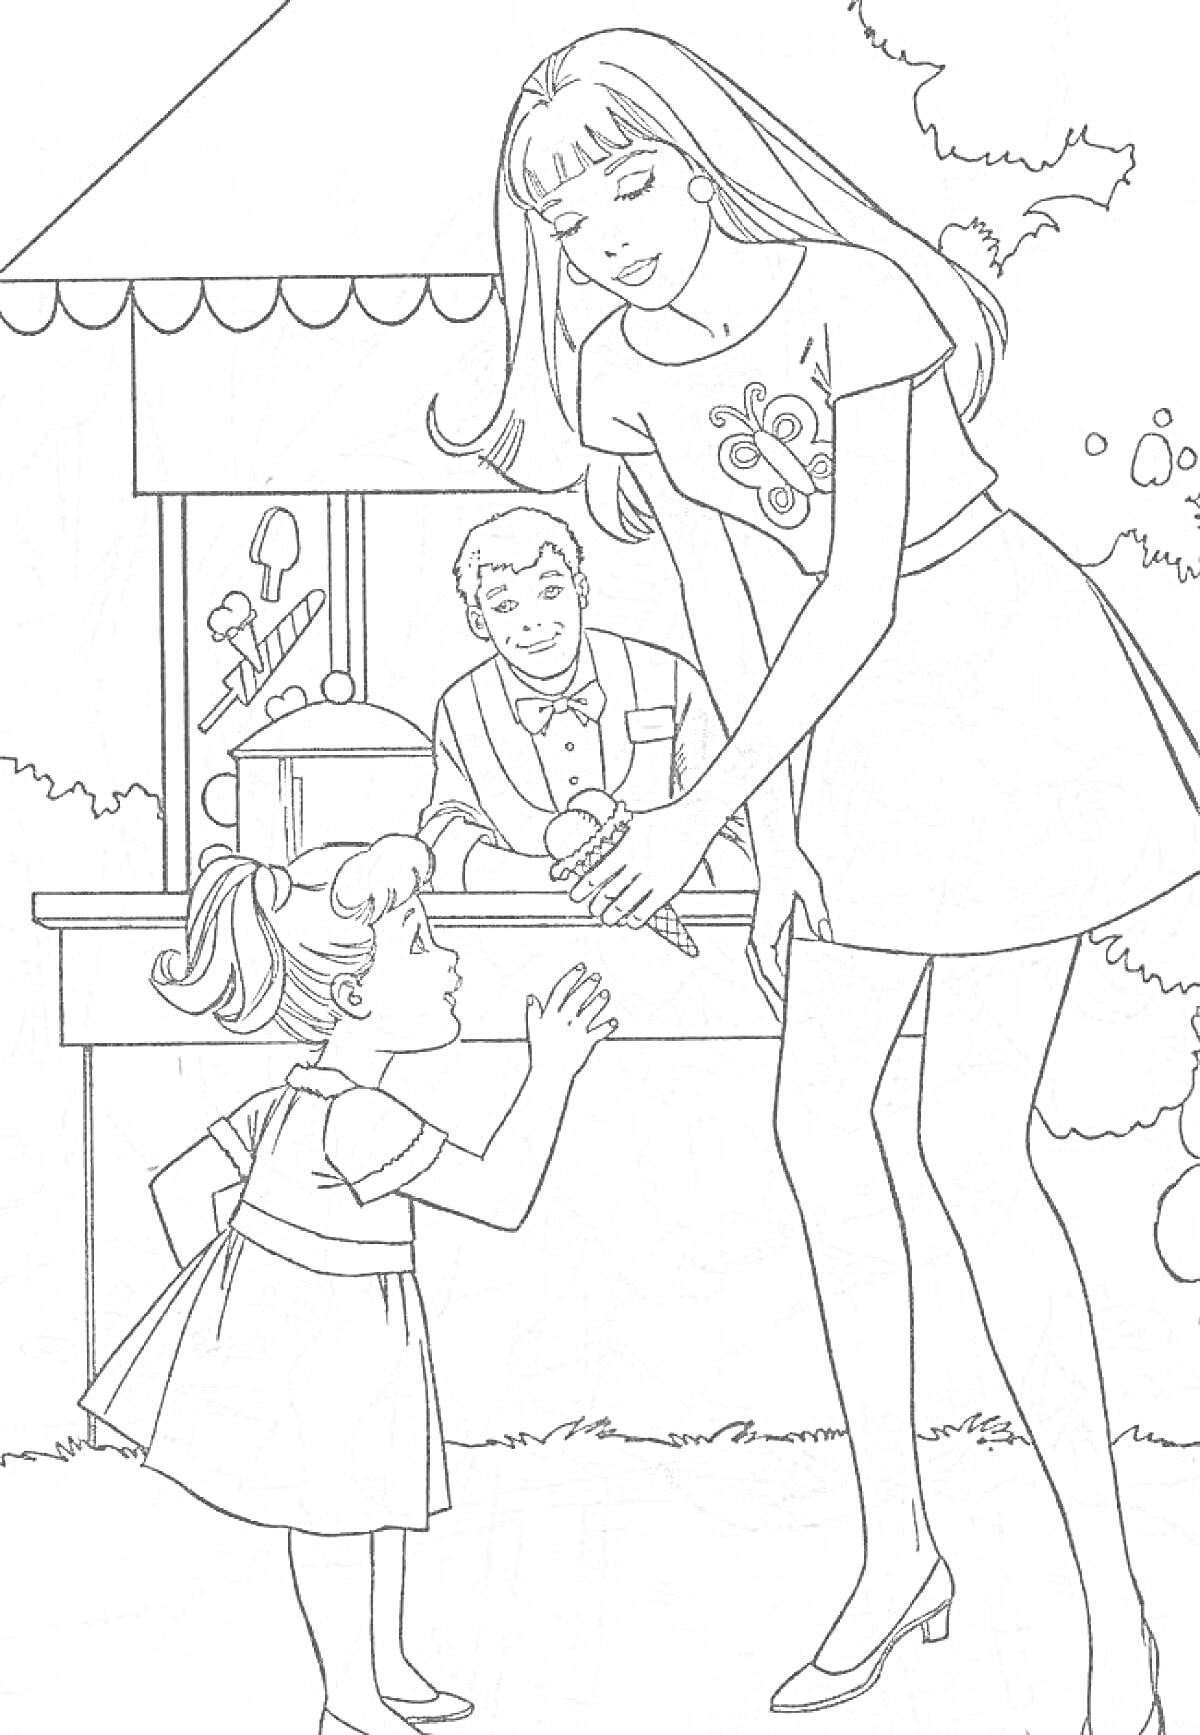 Раскраска Взрослая женщина с девочкой, киоск с продавцом, деревья и кусты. Женщина протягивает руку девочке, рядом с киоском игрушки.